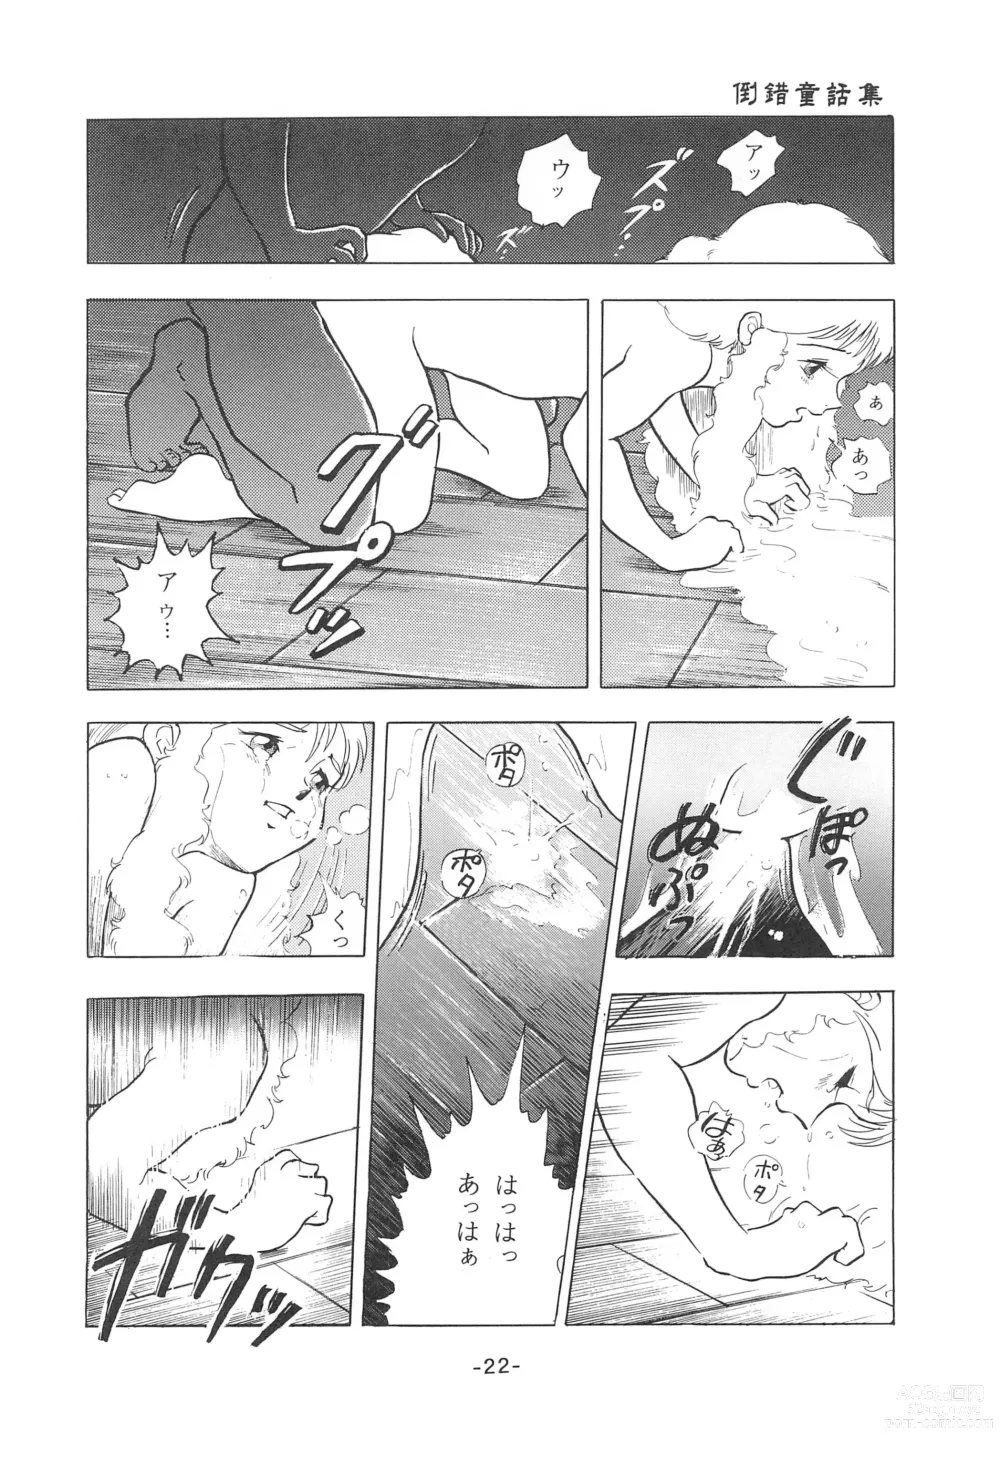 Page 24 of doujinshi Tousaku Douwa-shuu 1 Shirayukihime